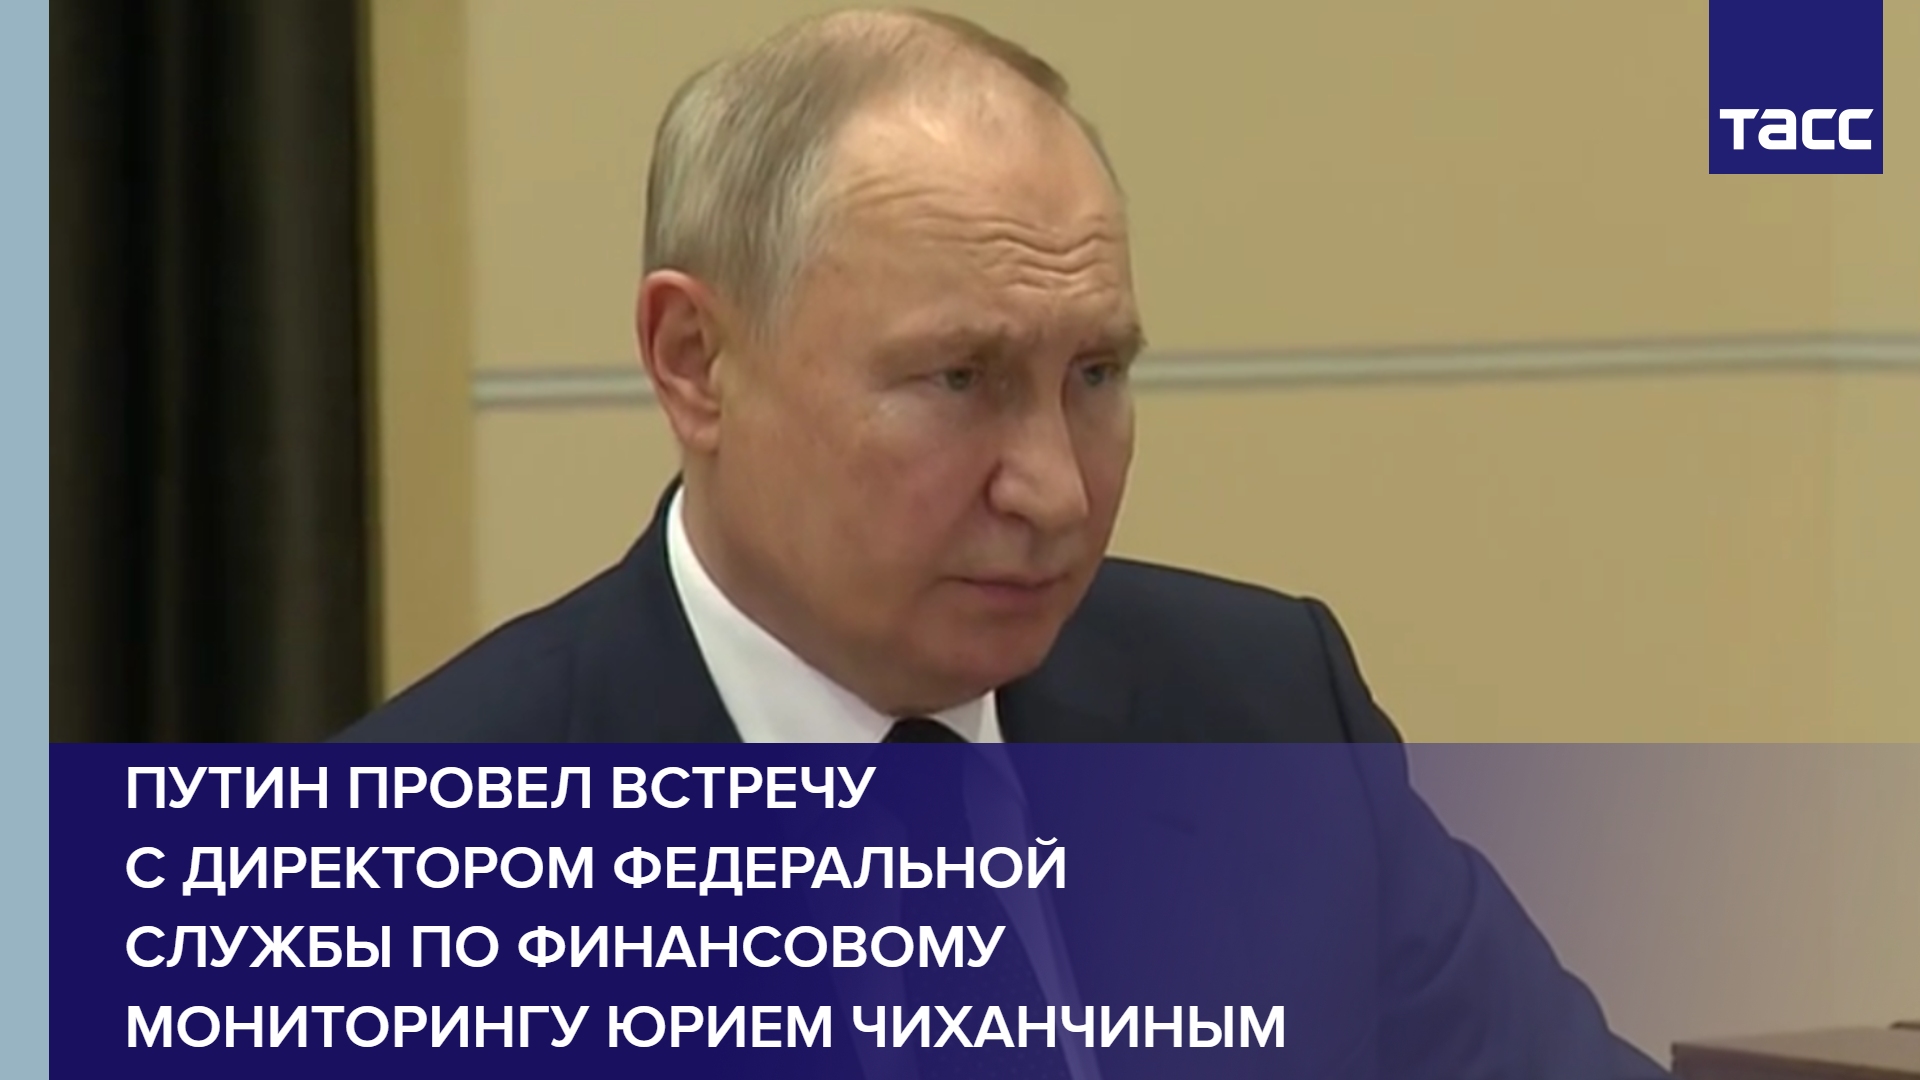 Путин провел встречу с директором Федеральной службы по финансовому мониторингу Юрием Чиханчиным